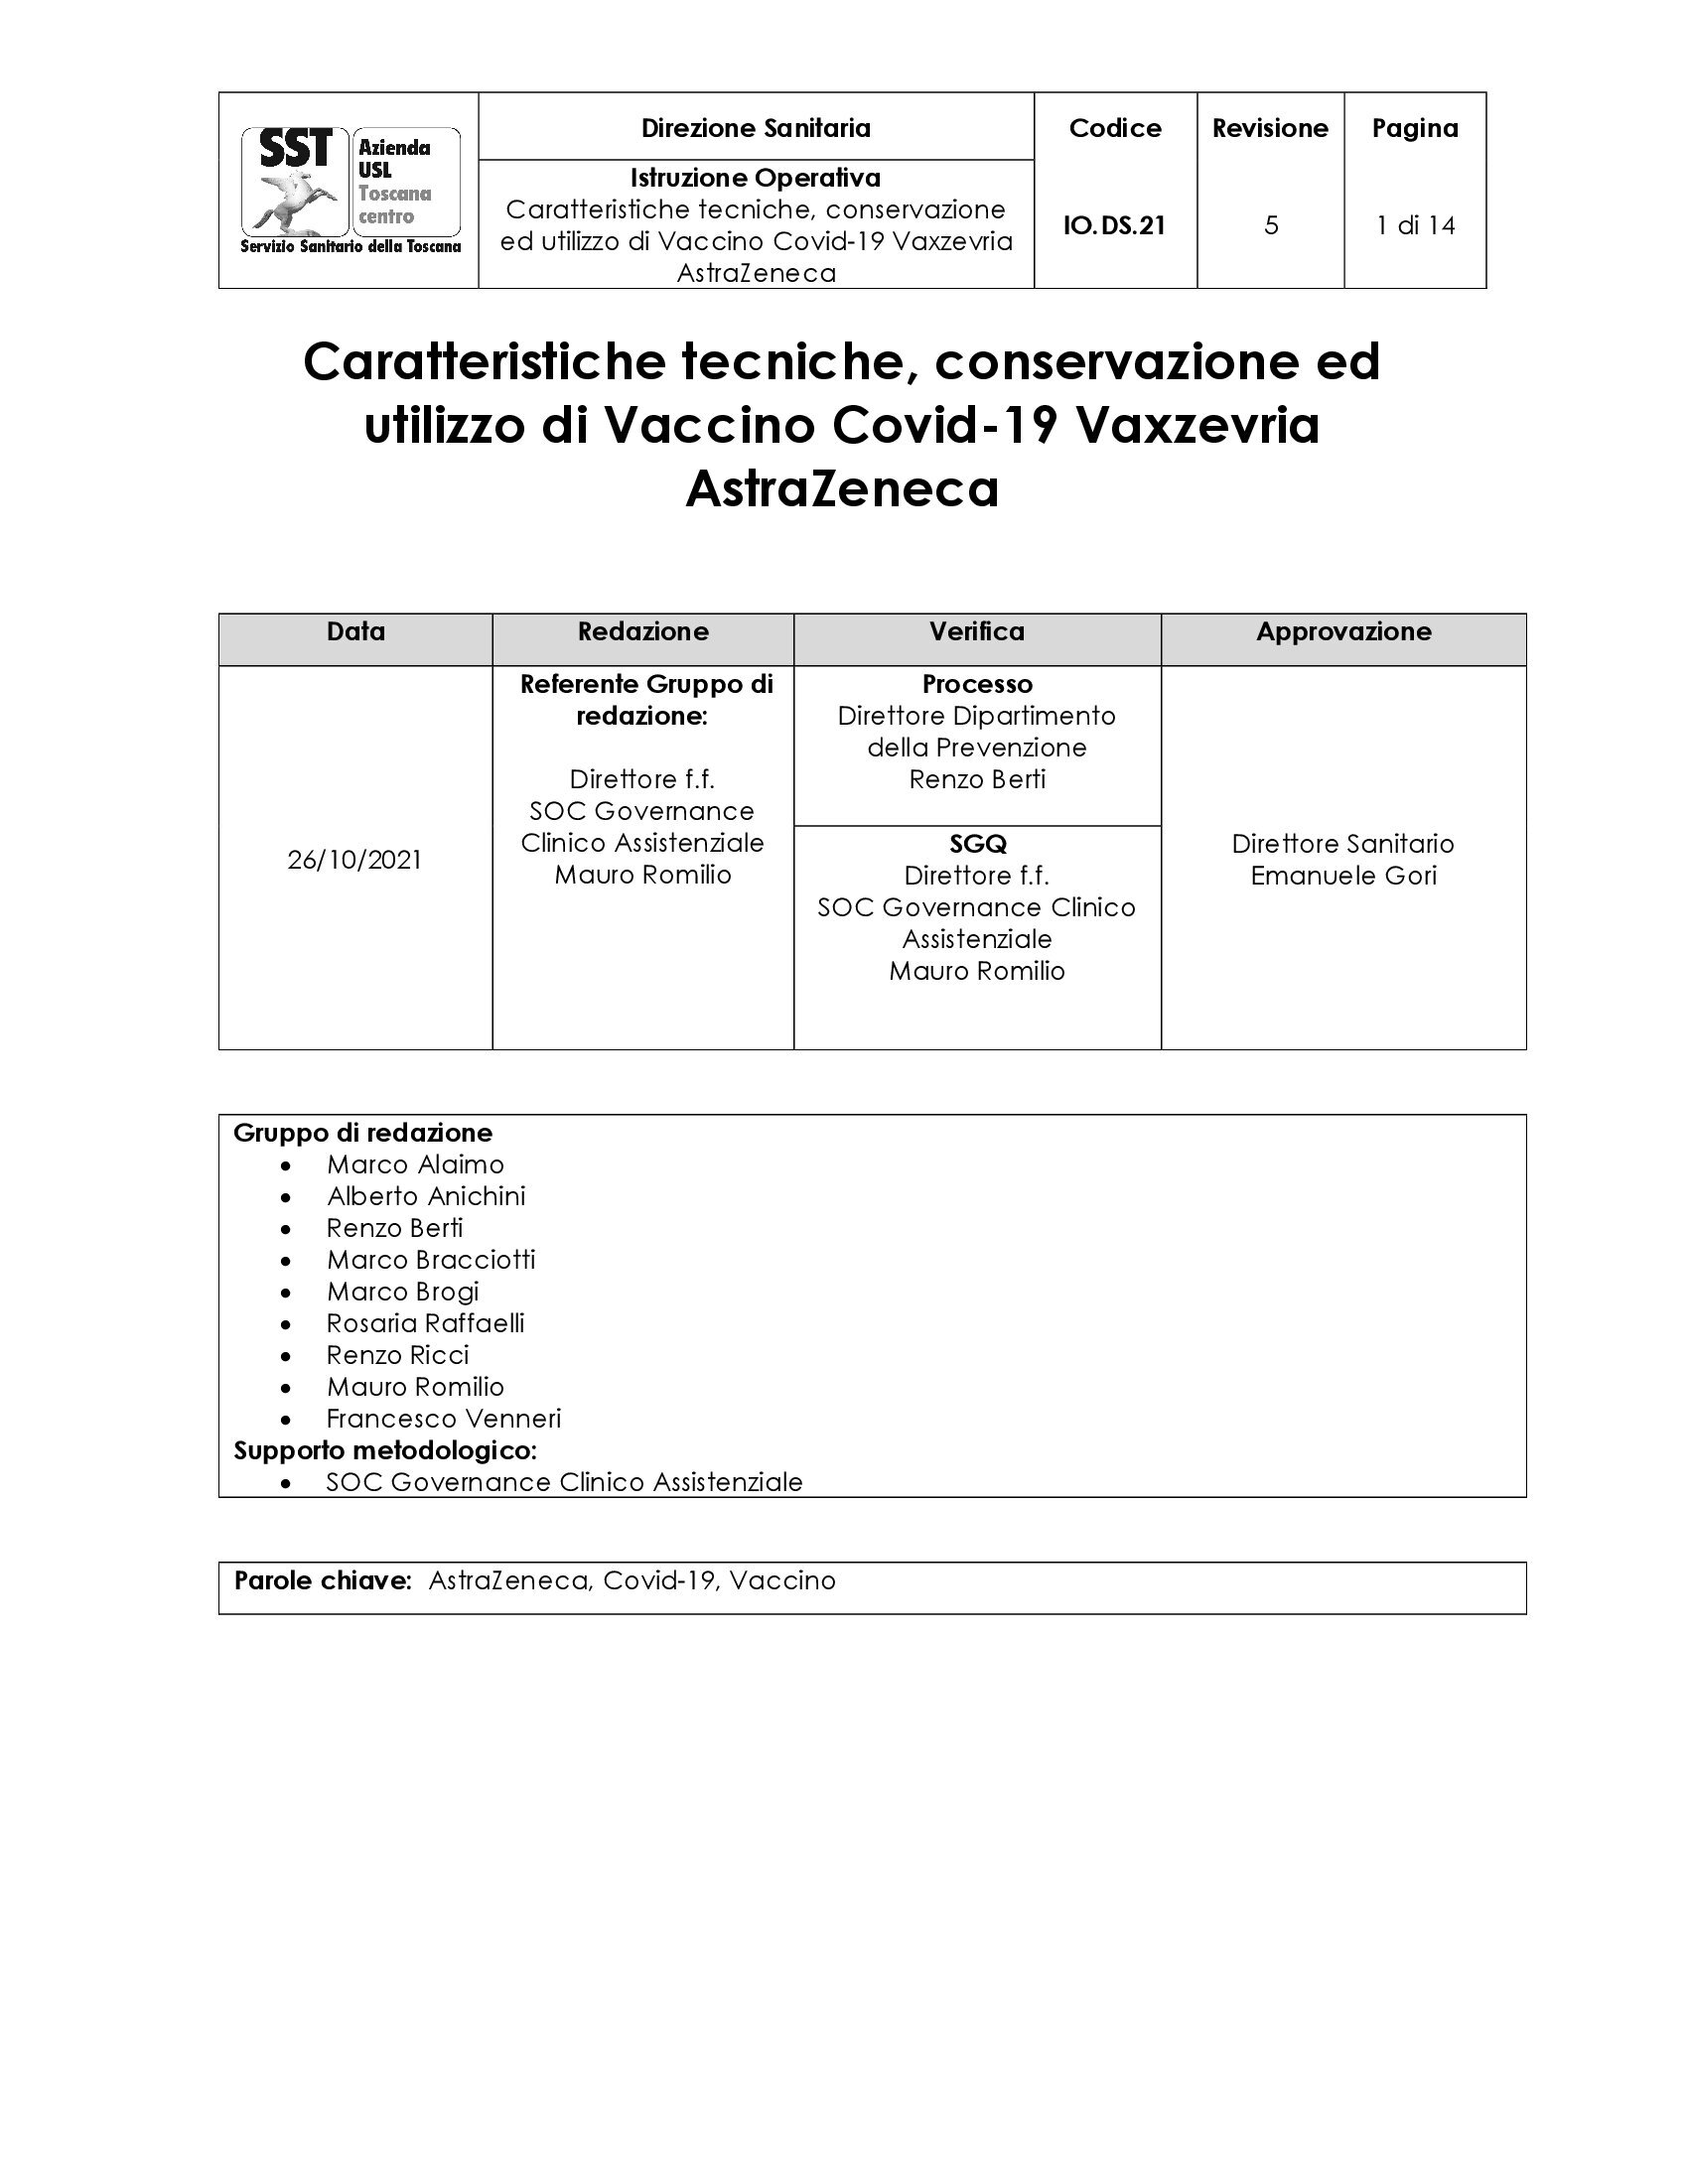 IO.DS.21 rev.5 Caratteristiche tecniche, conservazione ed utilizzo di Vaccino Covid-19 Vaxzevria  AstraZeneca